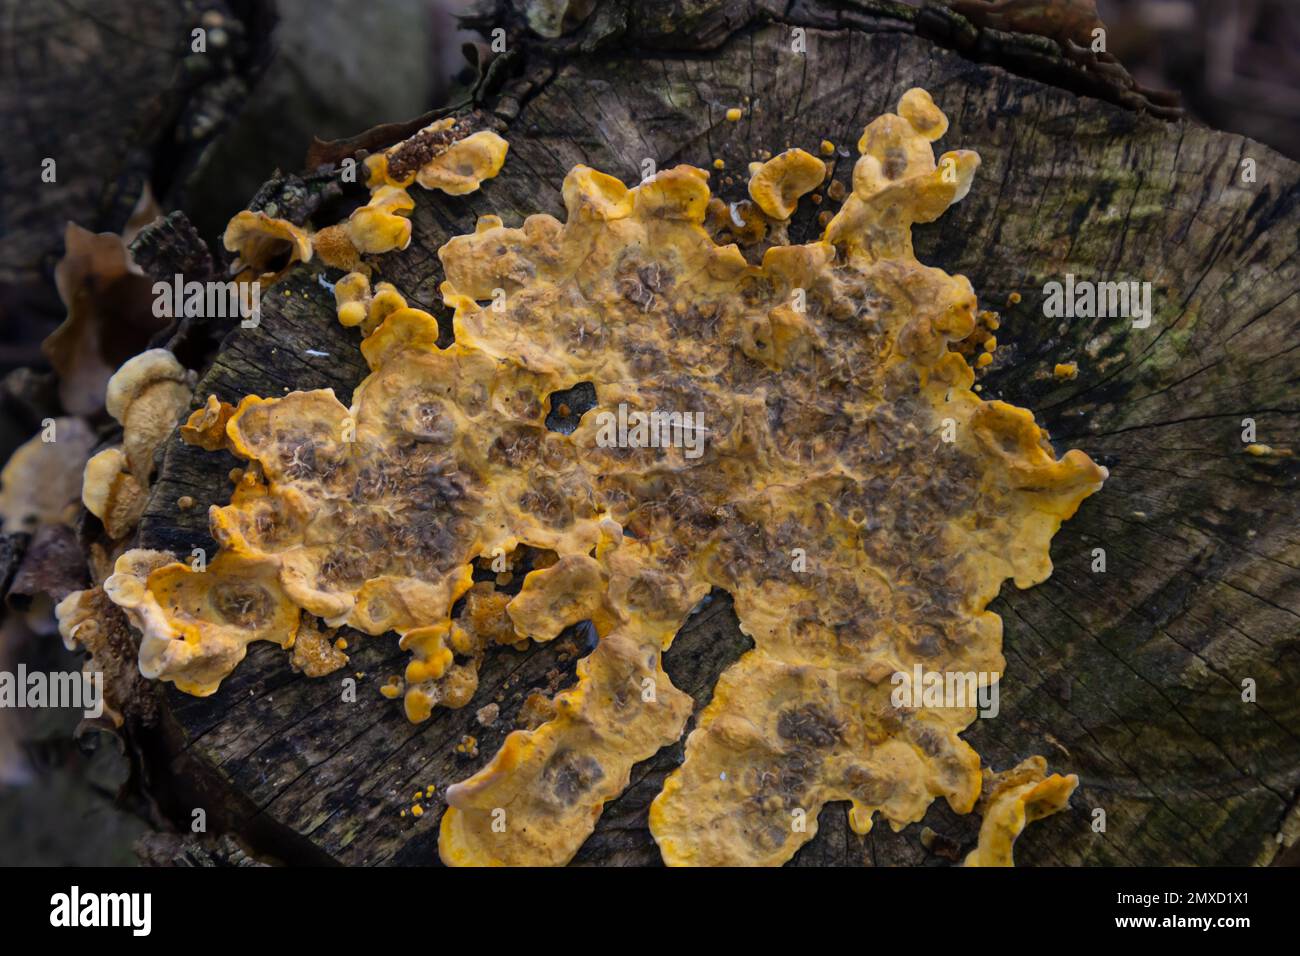 Image de faible profondeur de champ montrant certains champignons de la croûte du rideau de cheveux. Nom botanique Stereum hirsutum. Banque D'Images